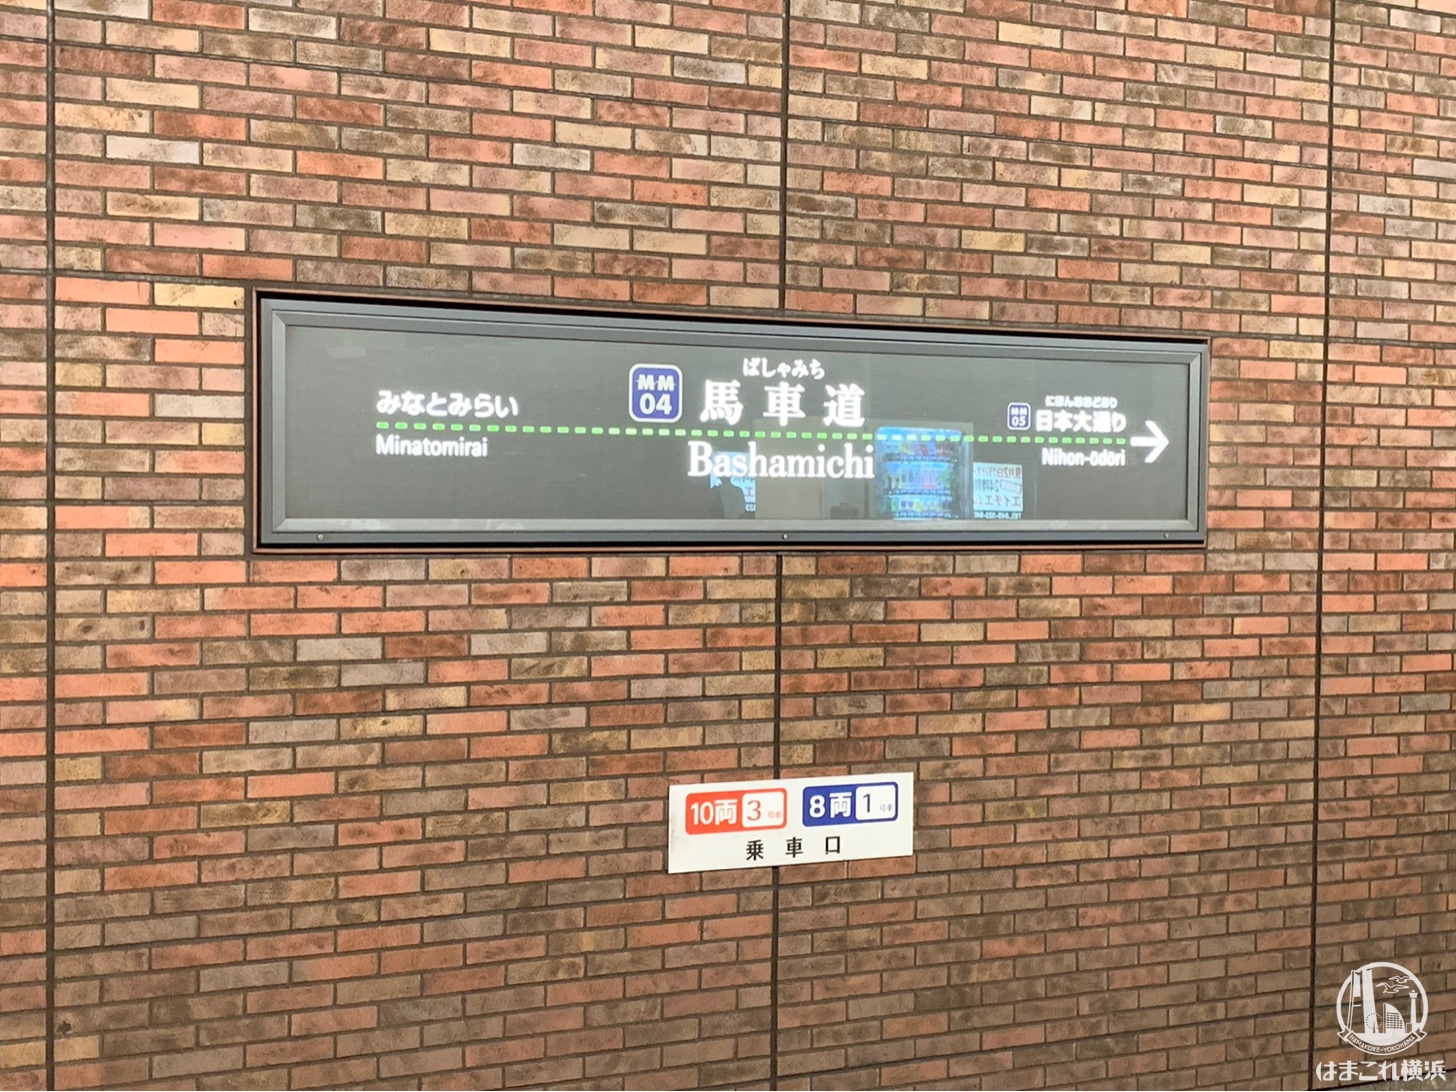 馬車道駅に副駅名 横浜市役所 が年に追加 はまこれ横浜